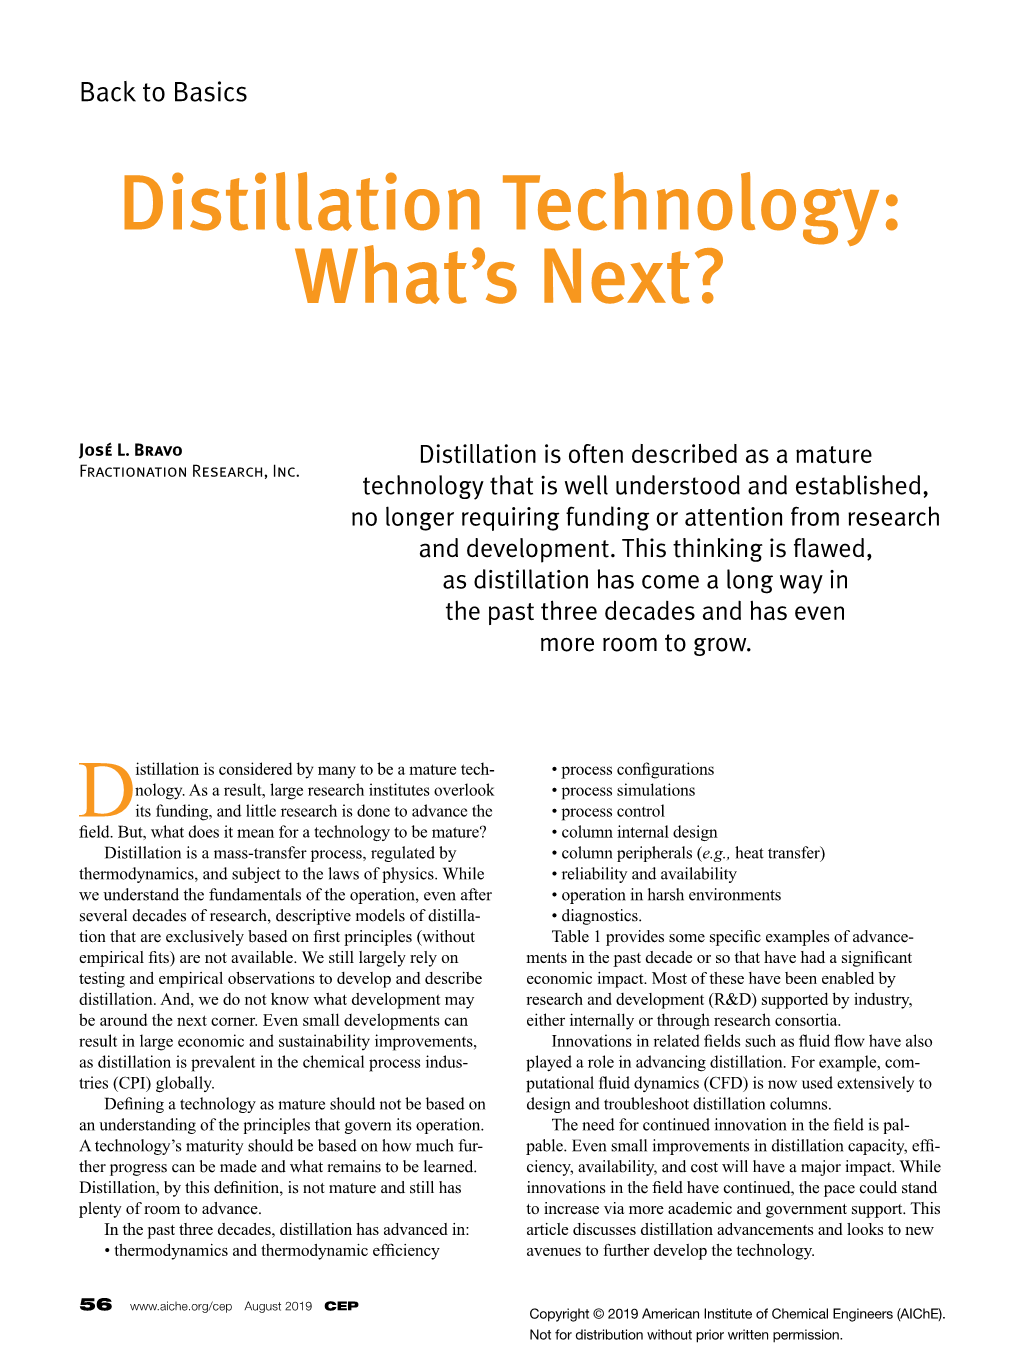 Distillation Technology: What's Next?